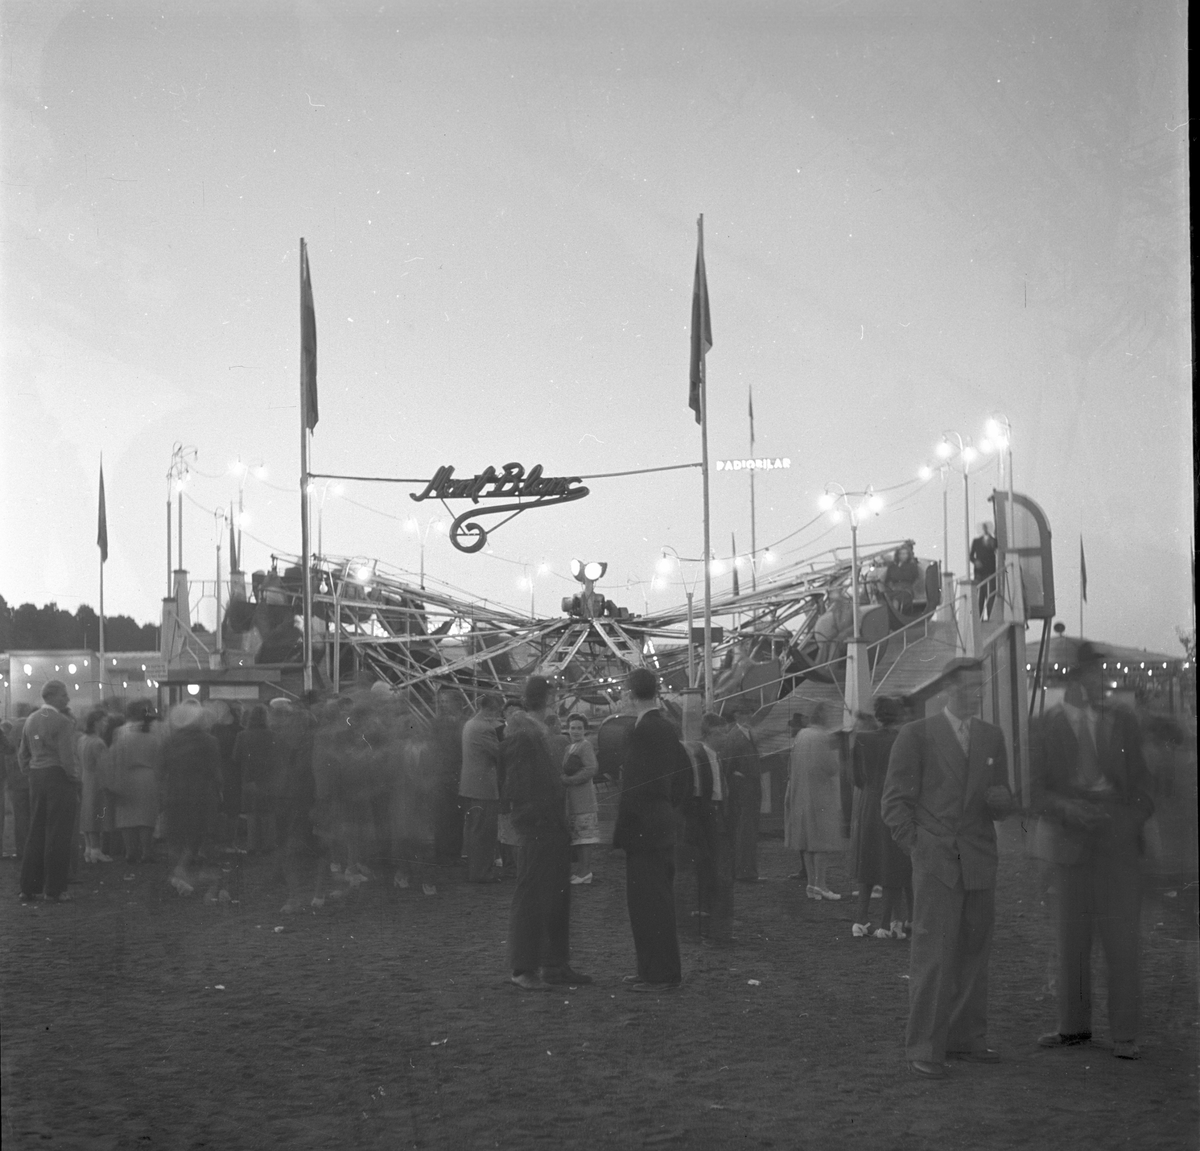 Nöjesavdelning på Folkparken. Gävleutställningen 1946

